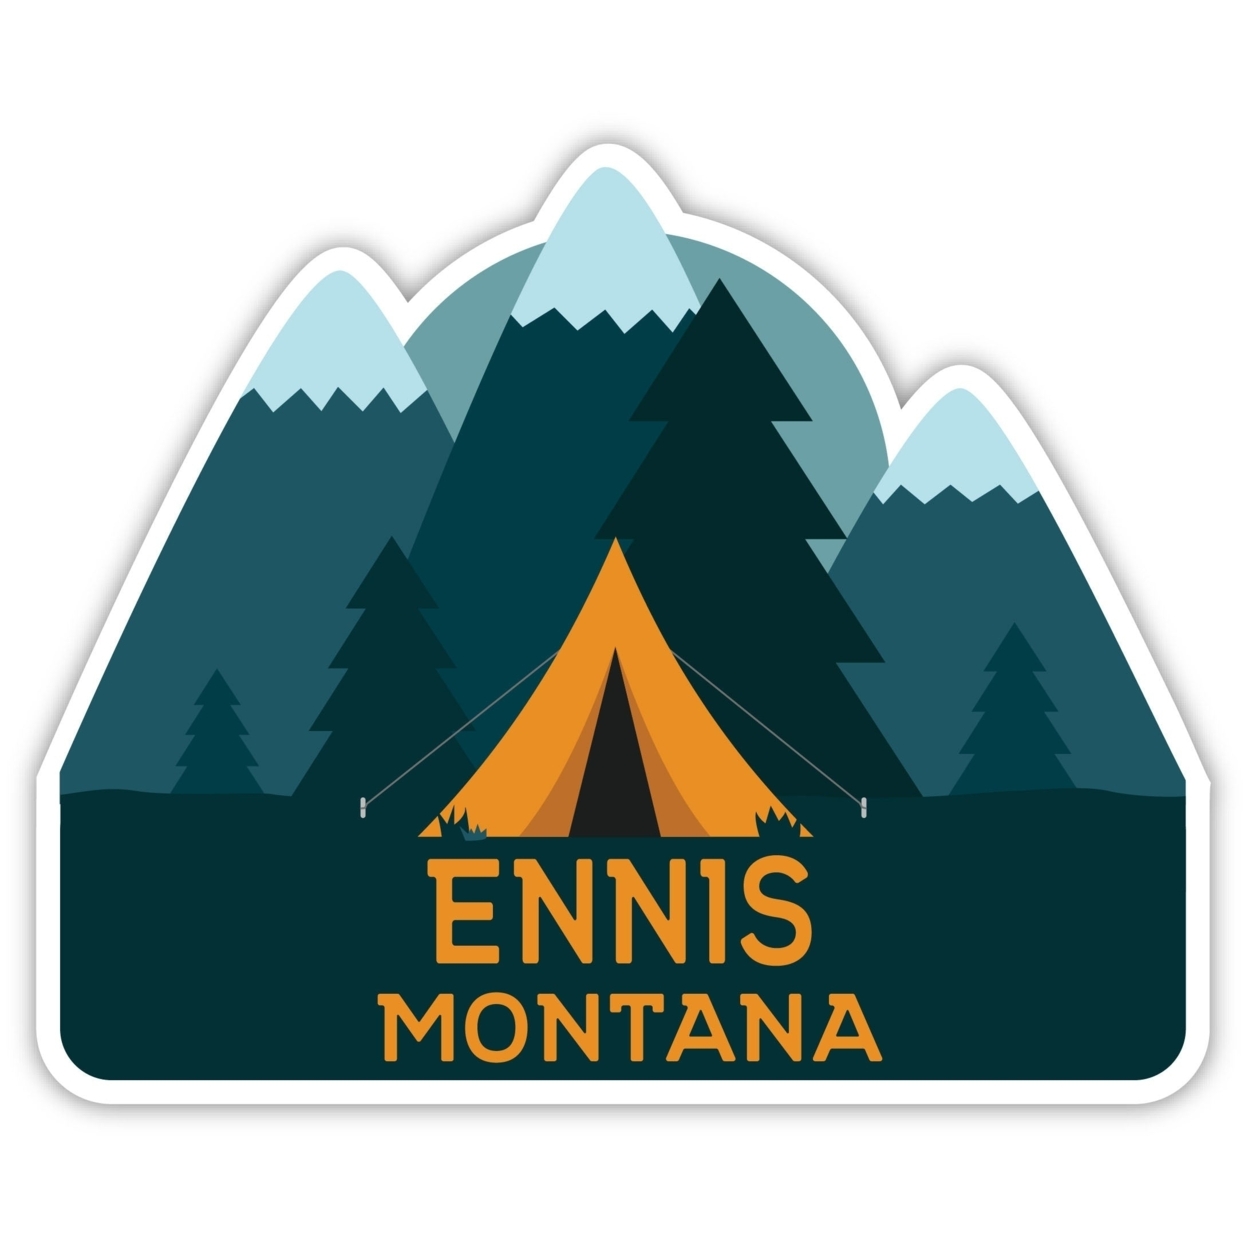 Ennis Montana Souvenir Decorative Stickers (Choose Theme And Size) - Single Unit, 6-Inch, Tent